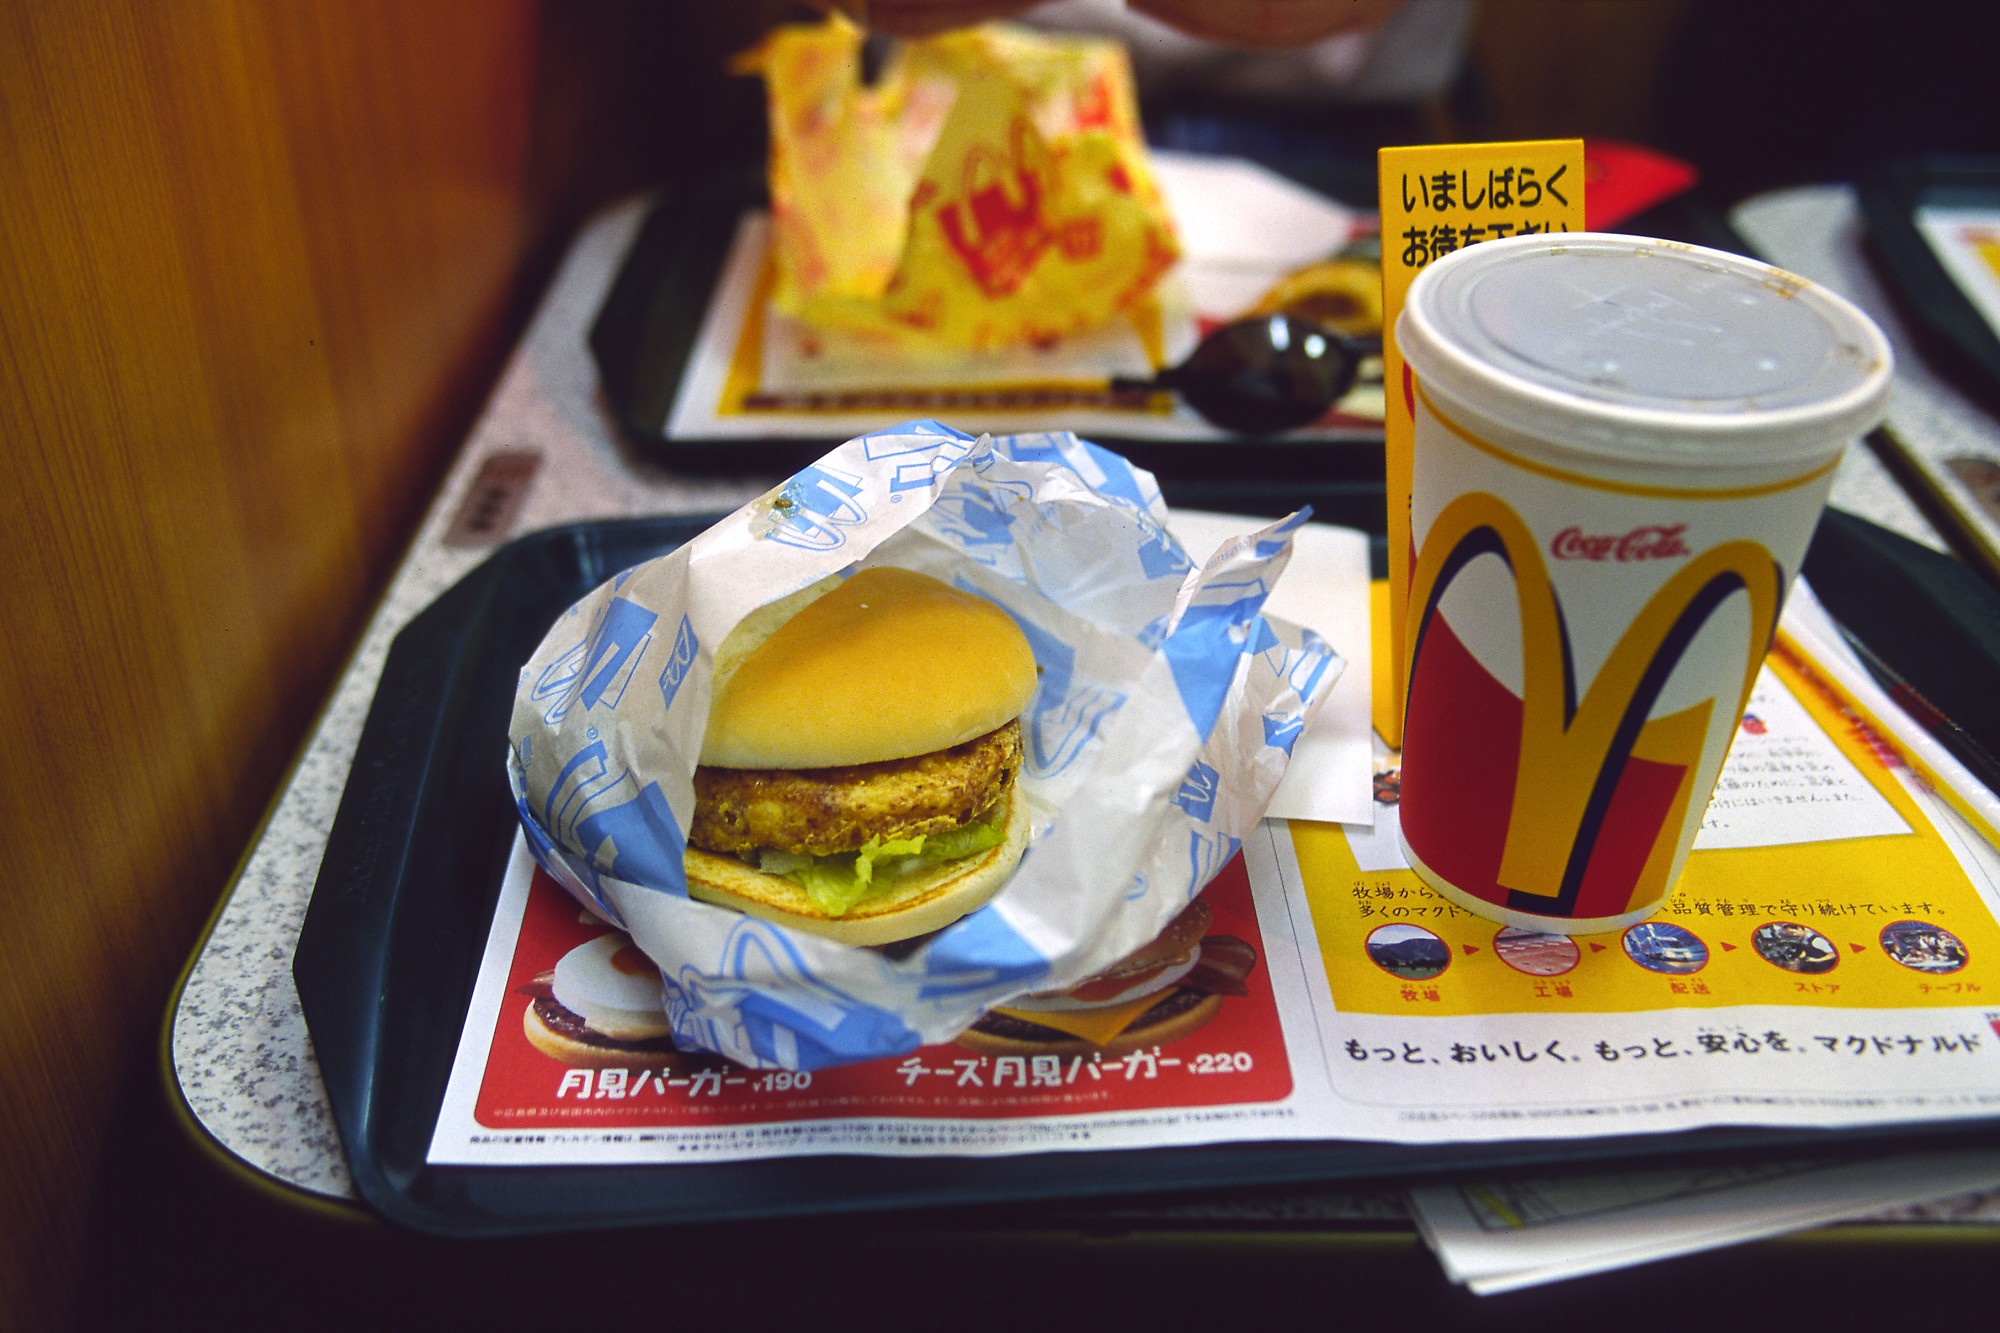 food, McDonalds, hamburgers - desktop wallpaper